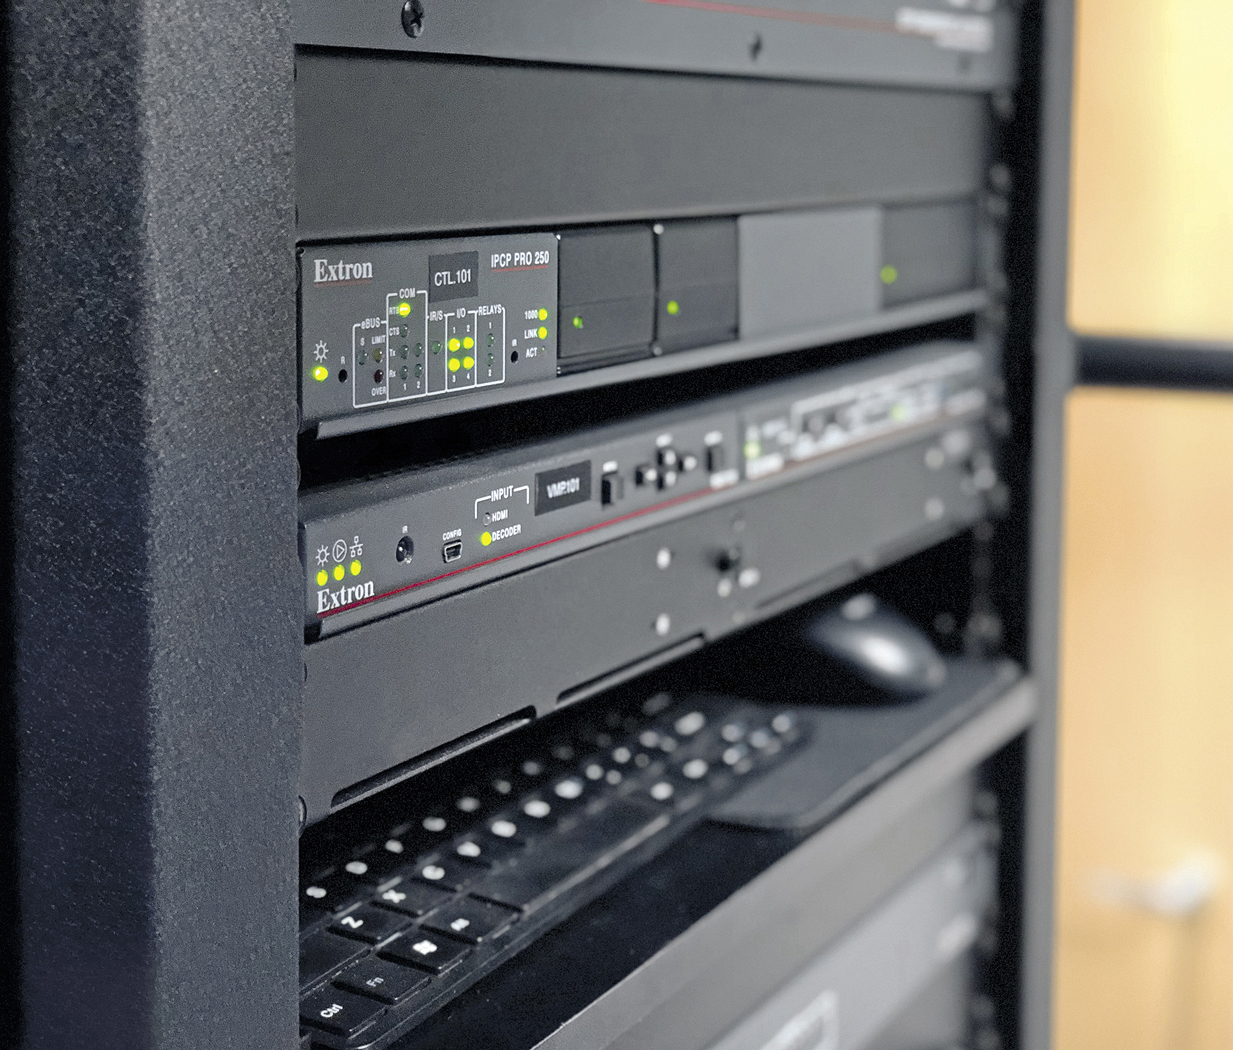 Le format compact et la faible consommation d'énergie des divers produits Extron, comme le processeur de contrôle IPCP Pro 250 et le décodeur de streaming média SMD 202, ont permis d'installer les équipements dans un même rack.